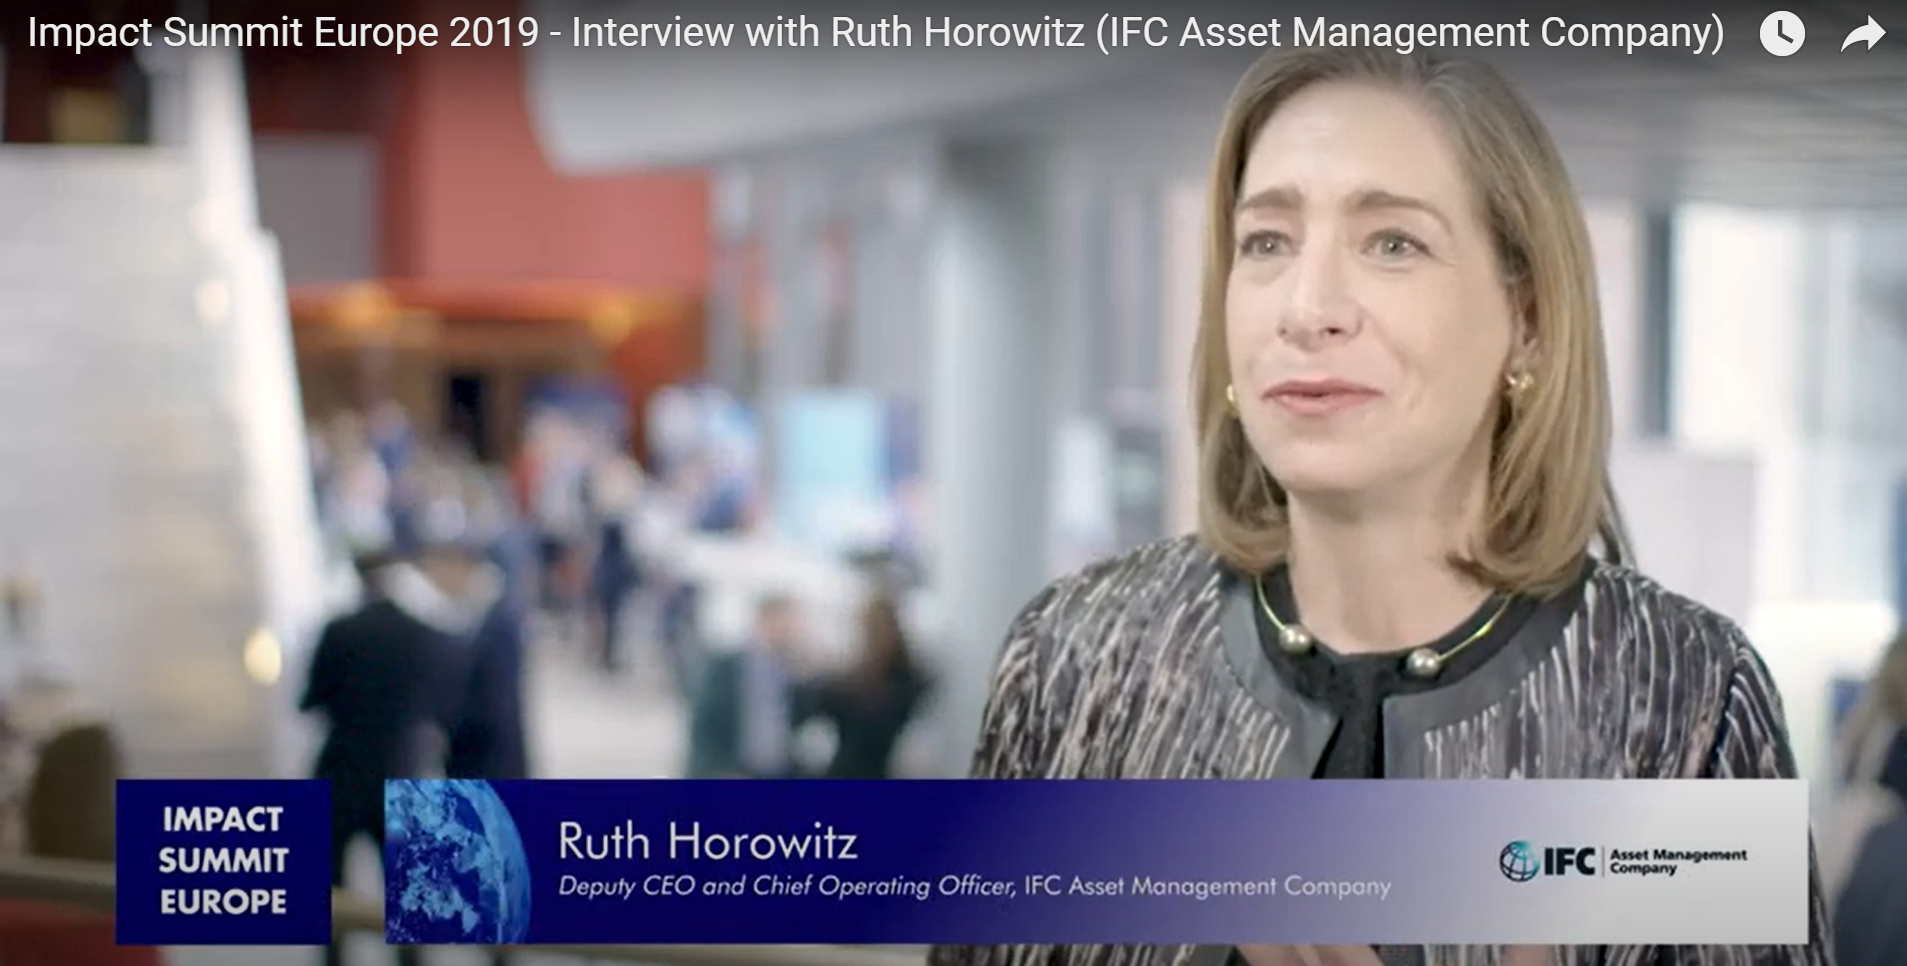 Ruth Horowitz I IFC Asset Management Company